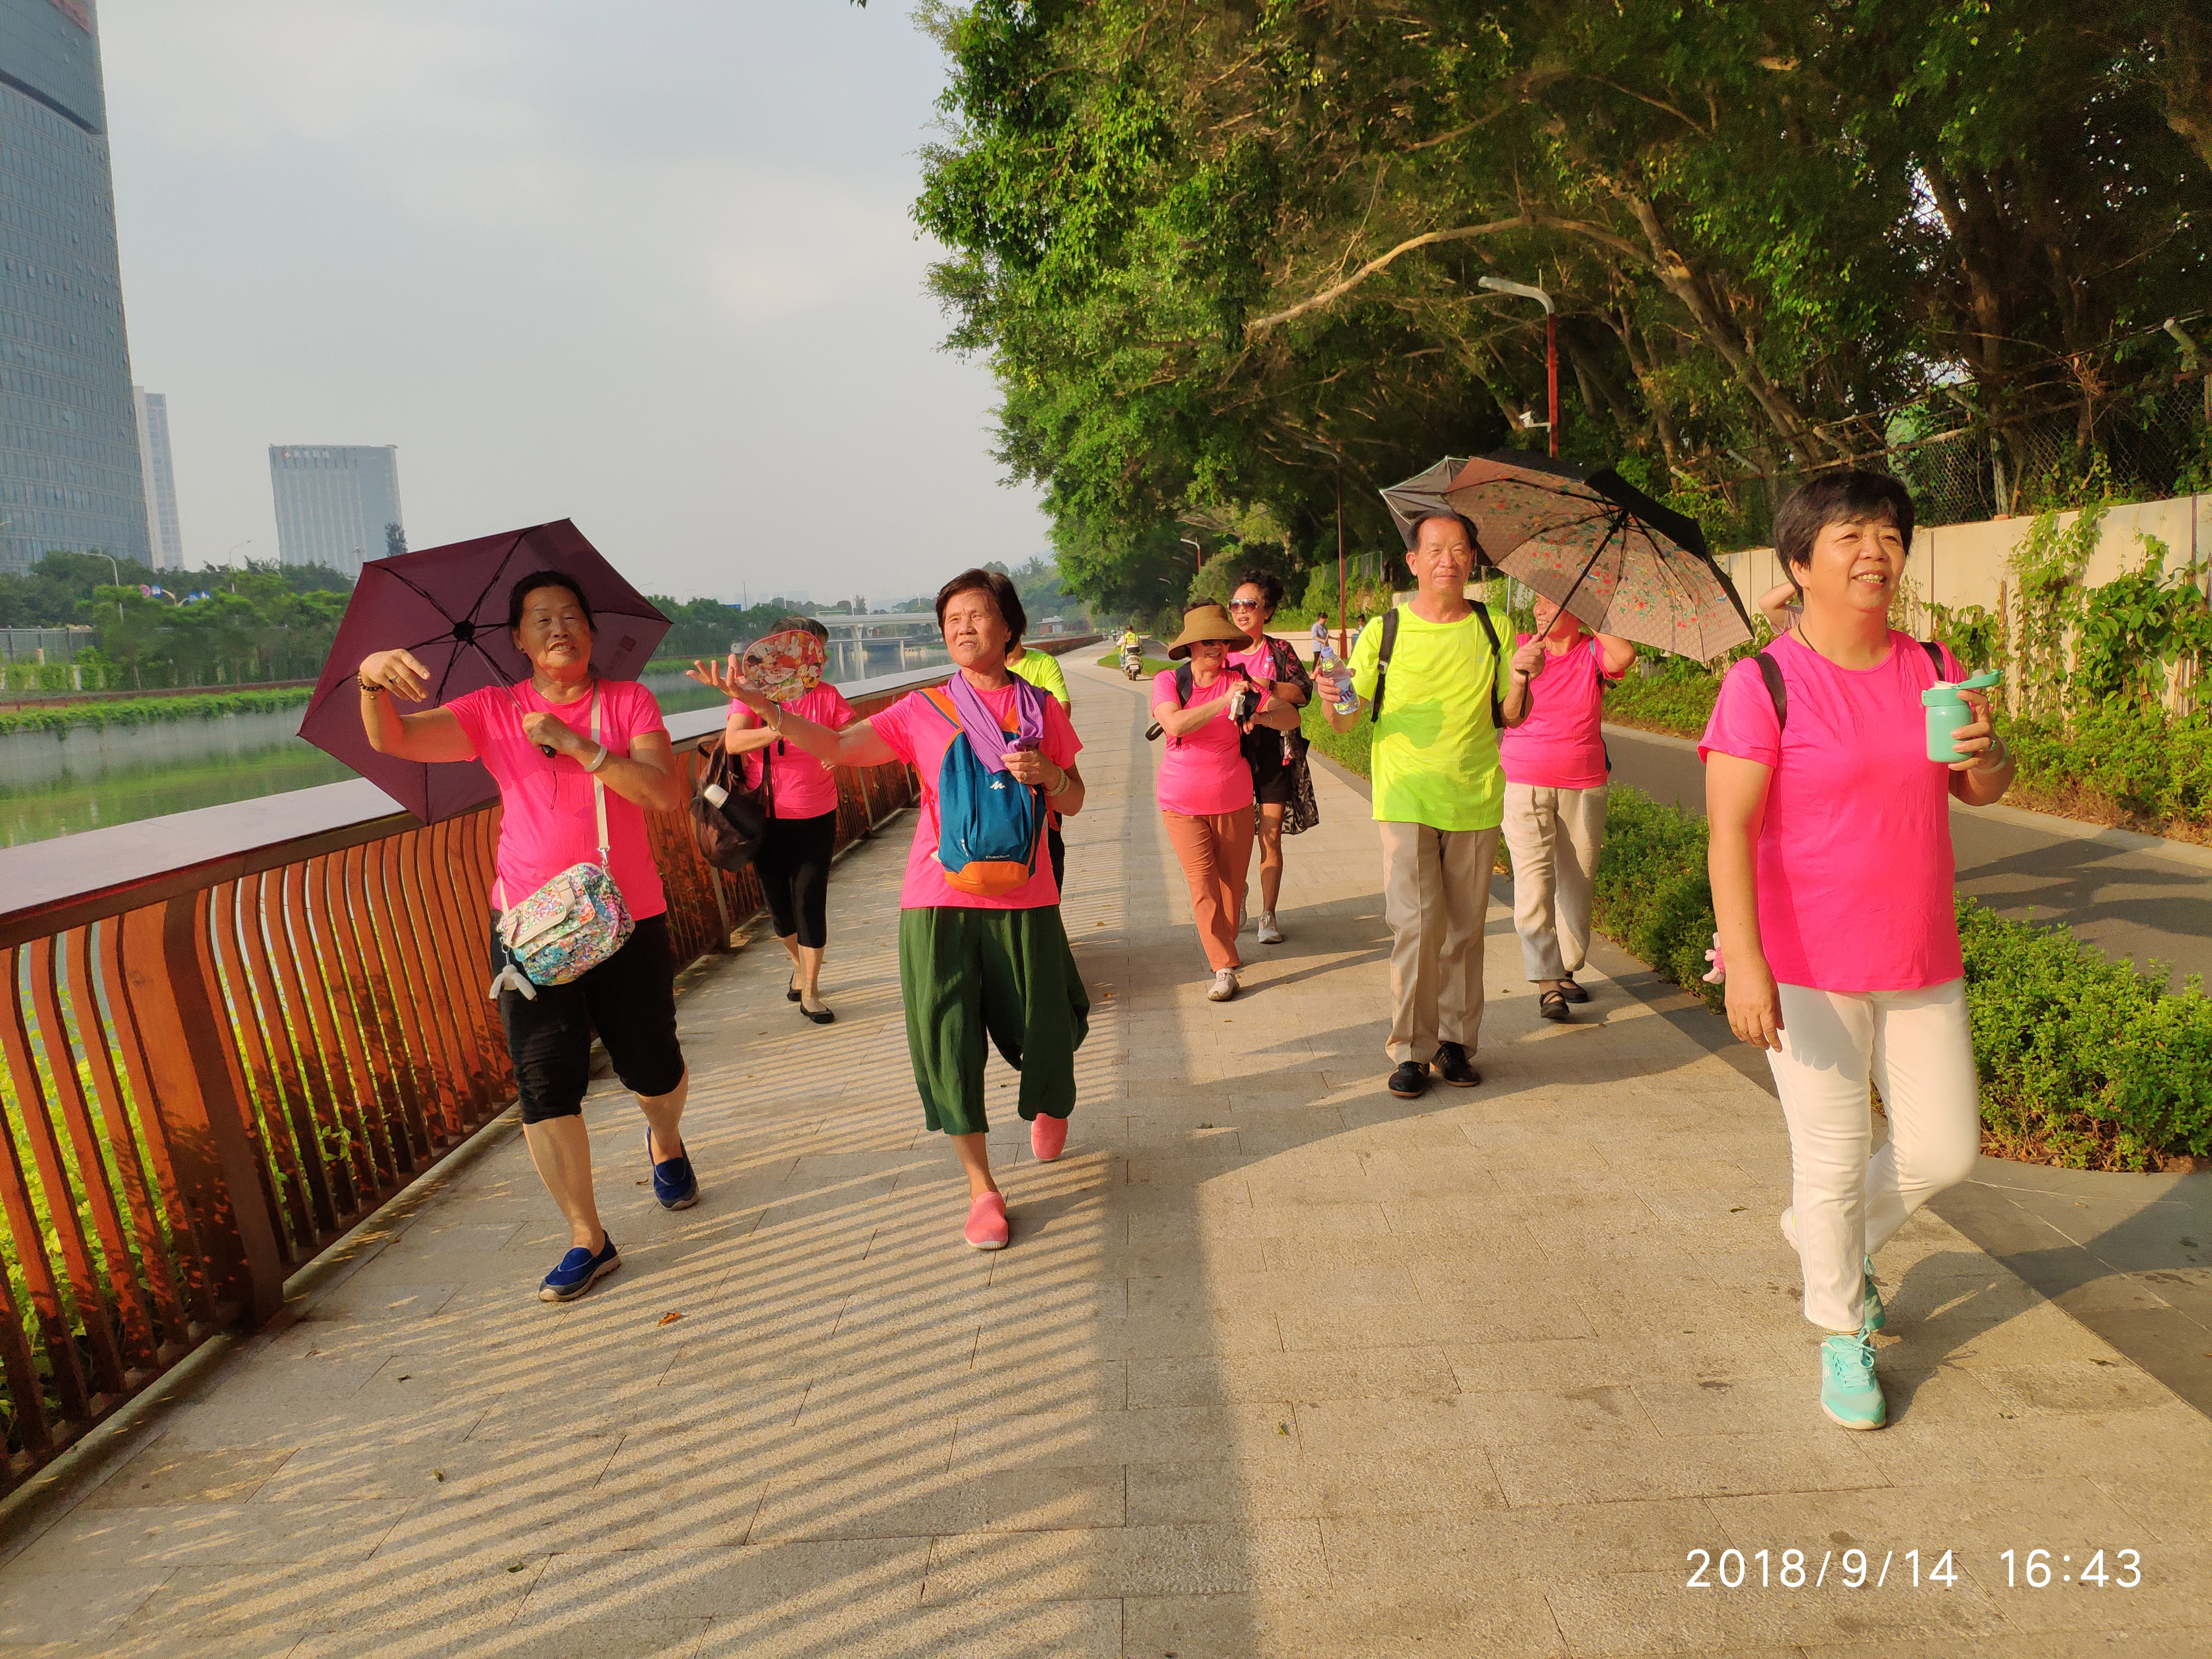 锻炼身体，保护环境  —大冲社区行走大沙河活动